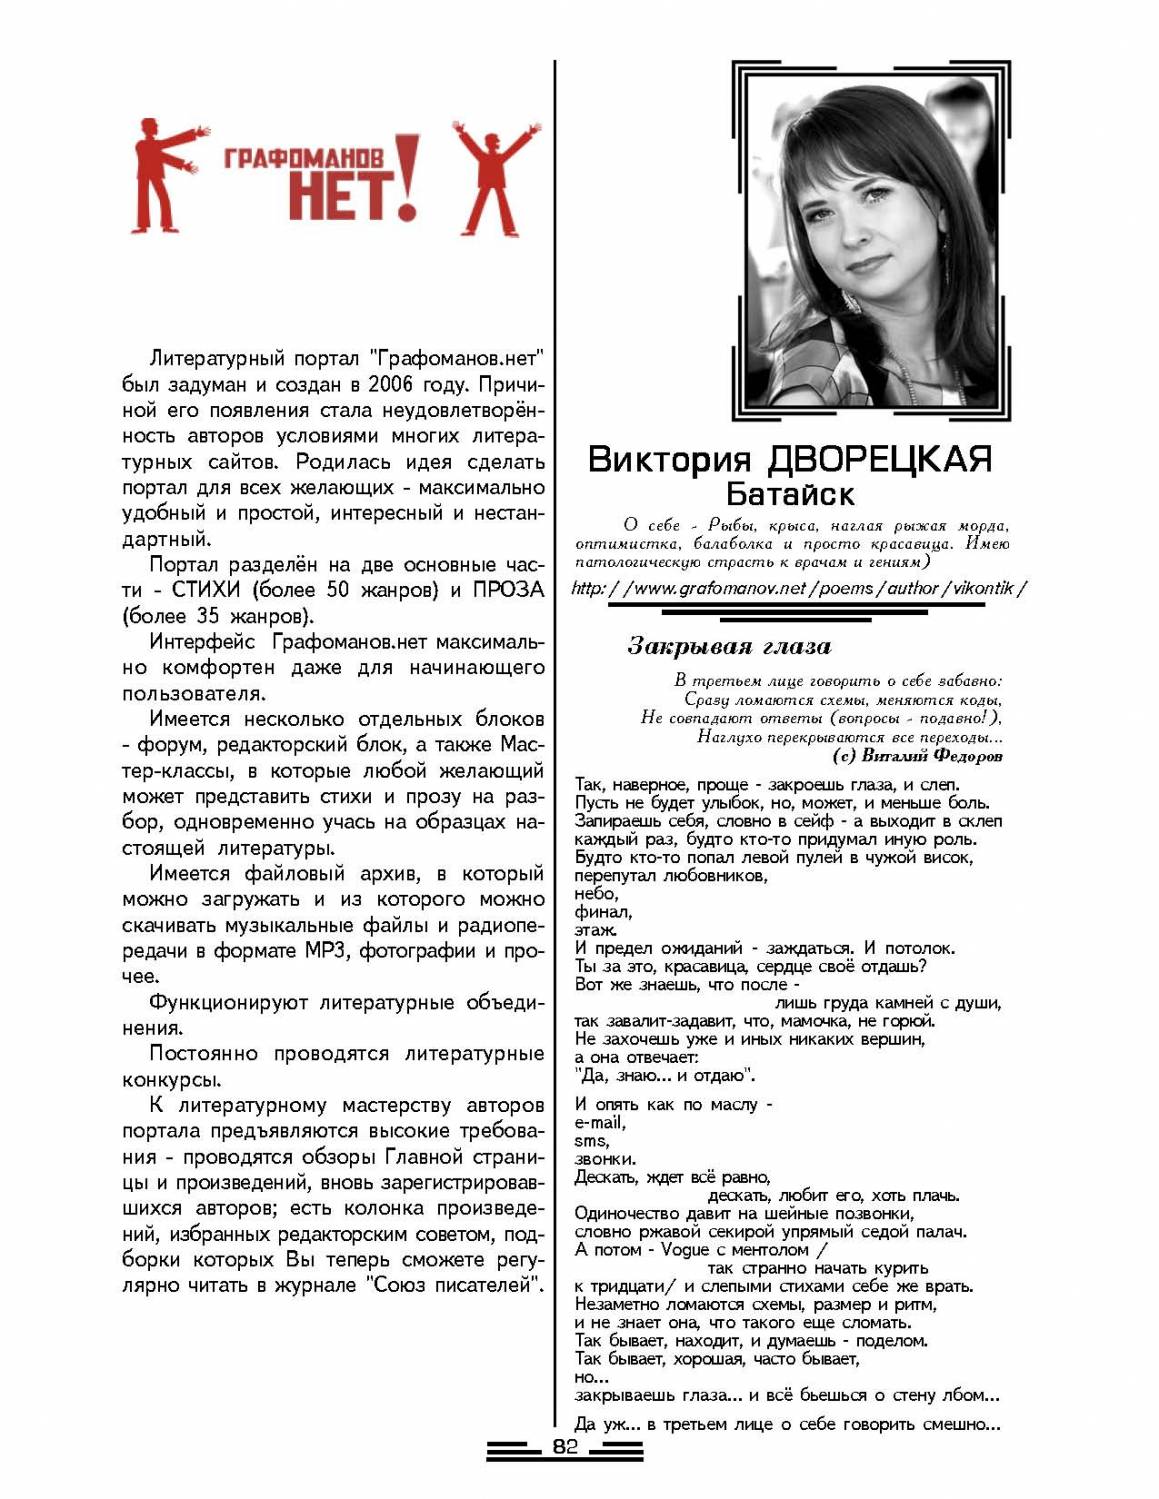 Коллективные страницы авторов портала "Графоманов.нет" в СП№5